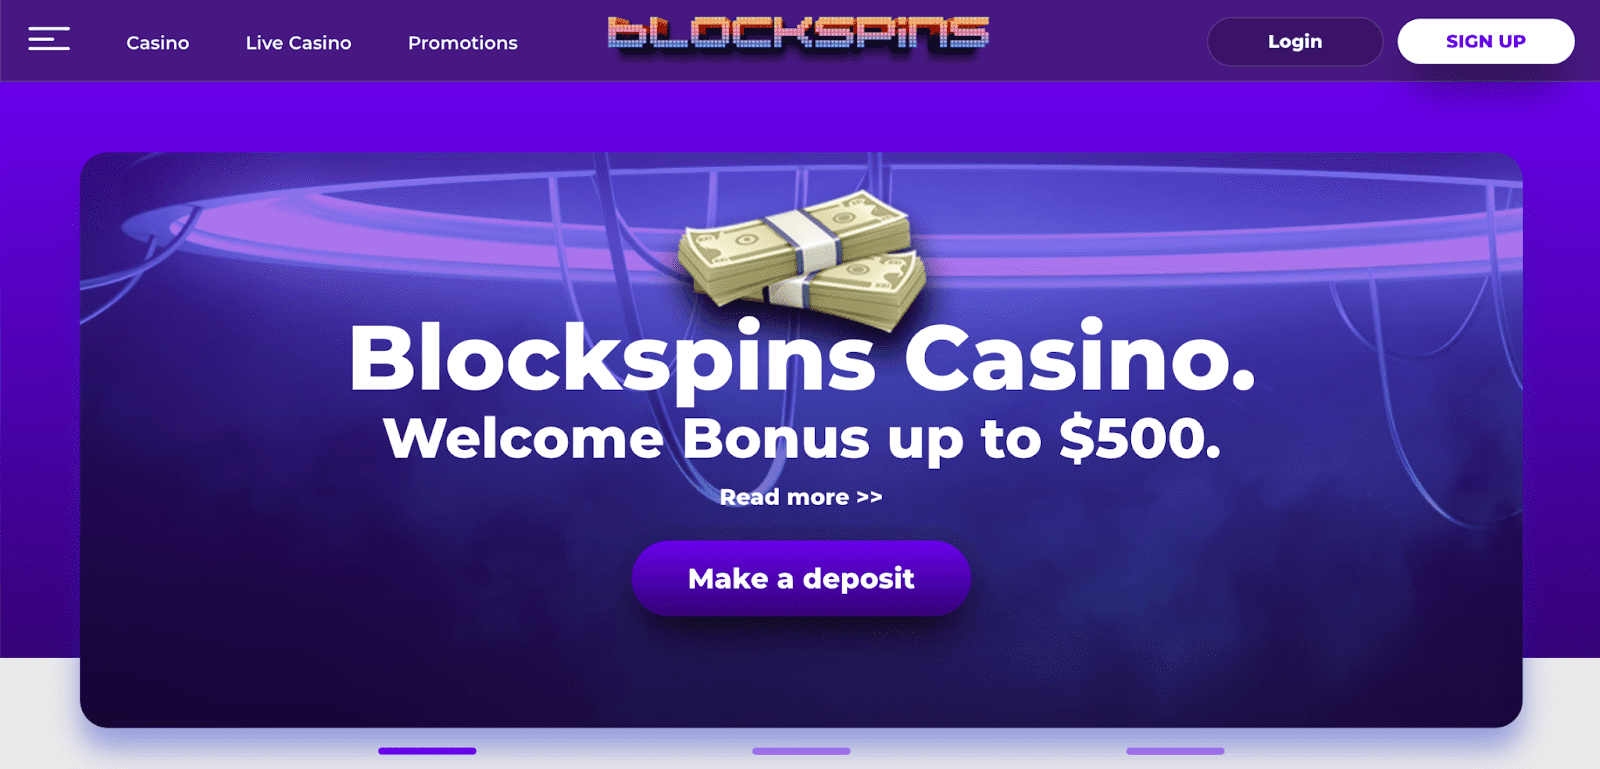 Blockspins casino